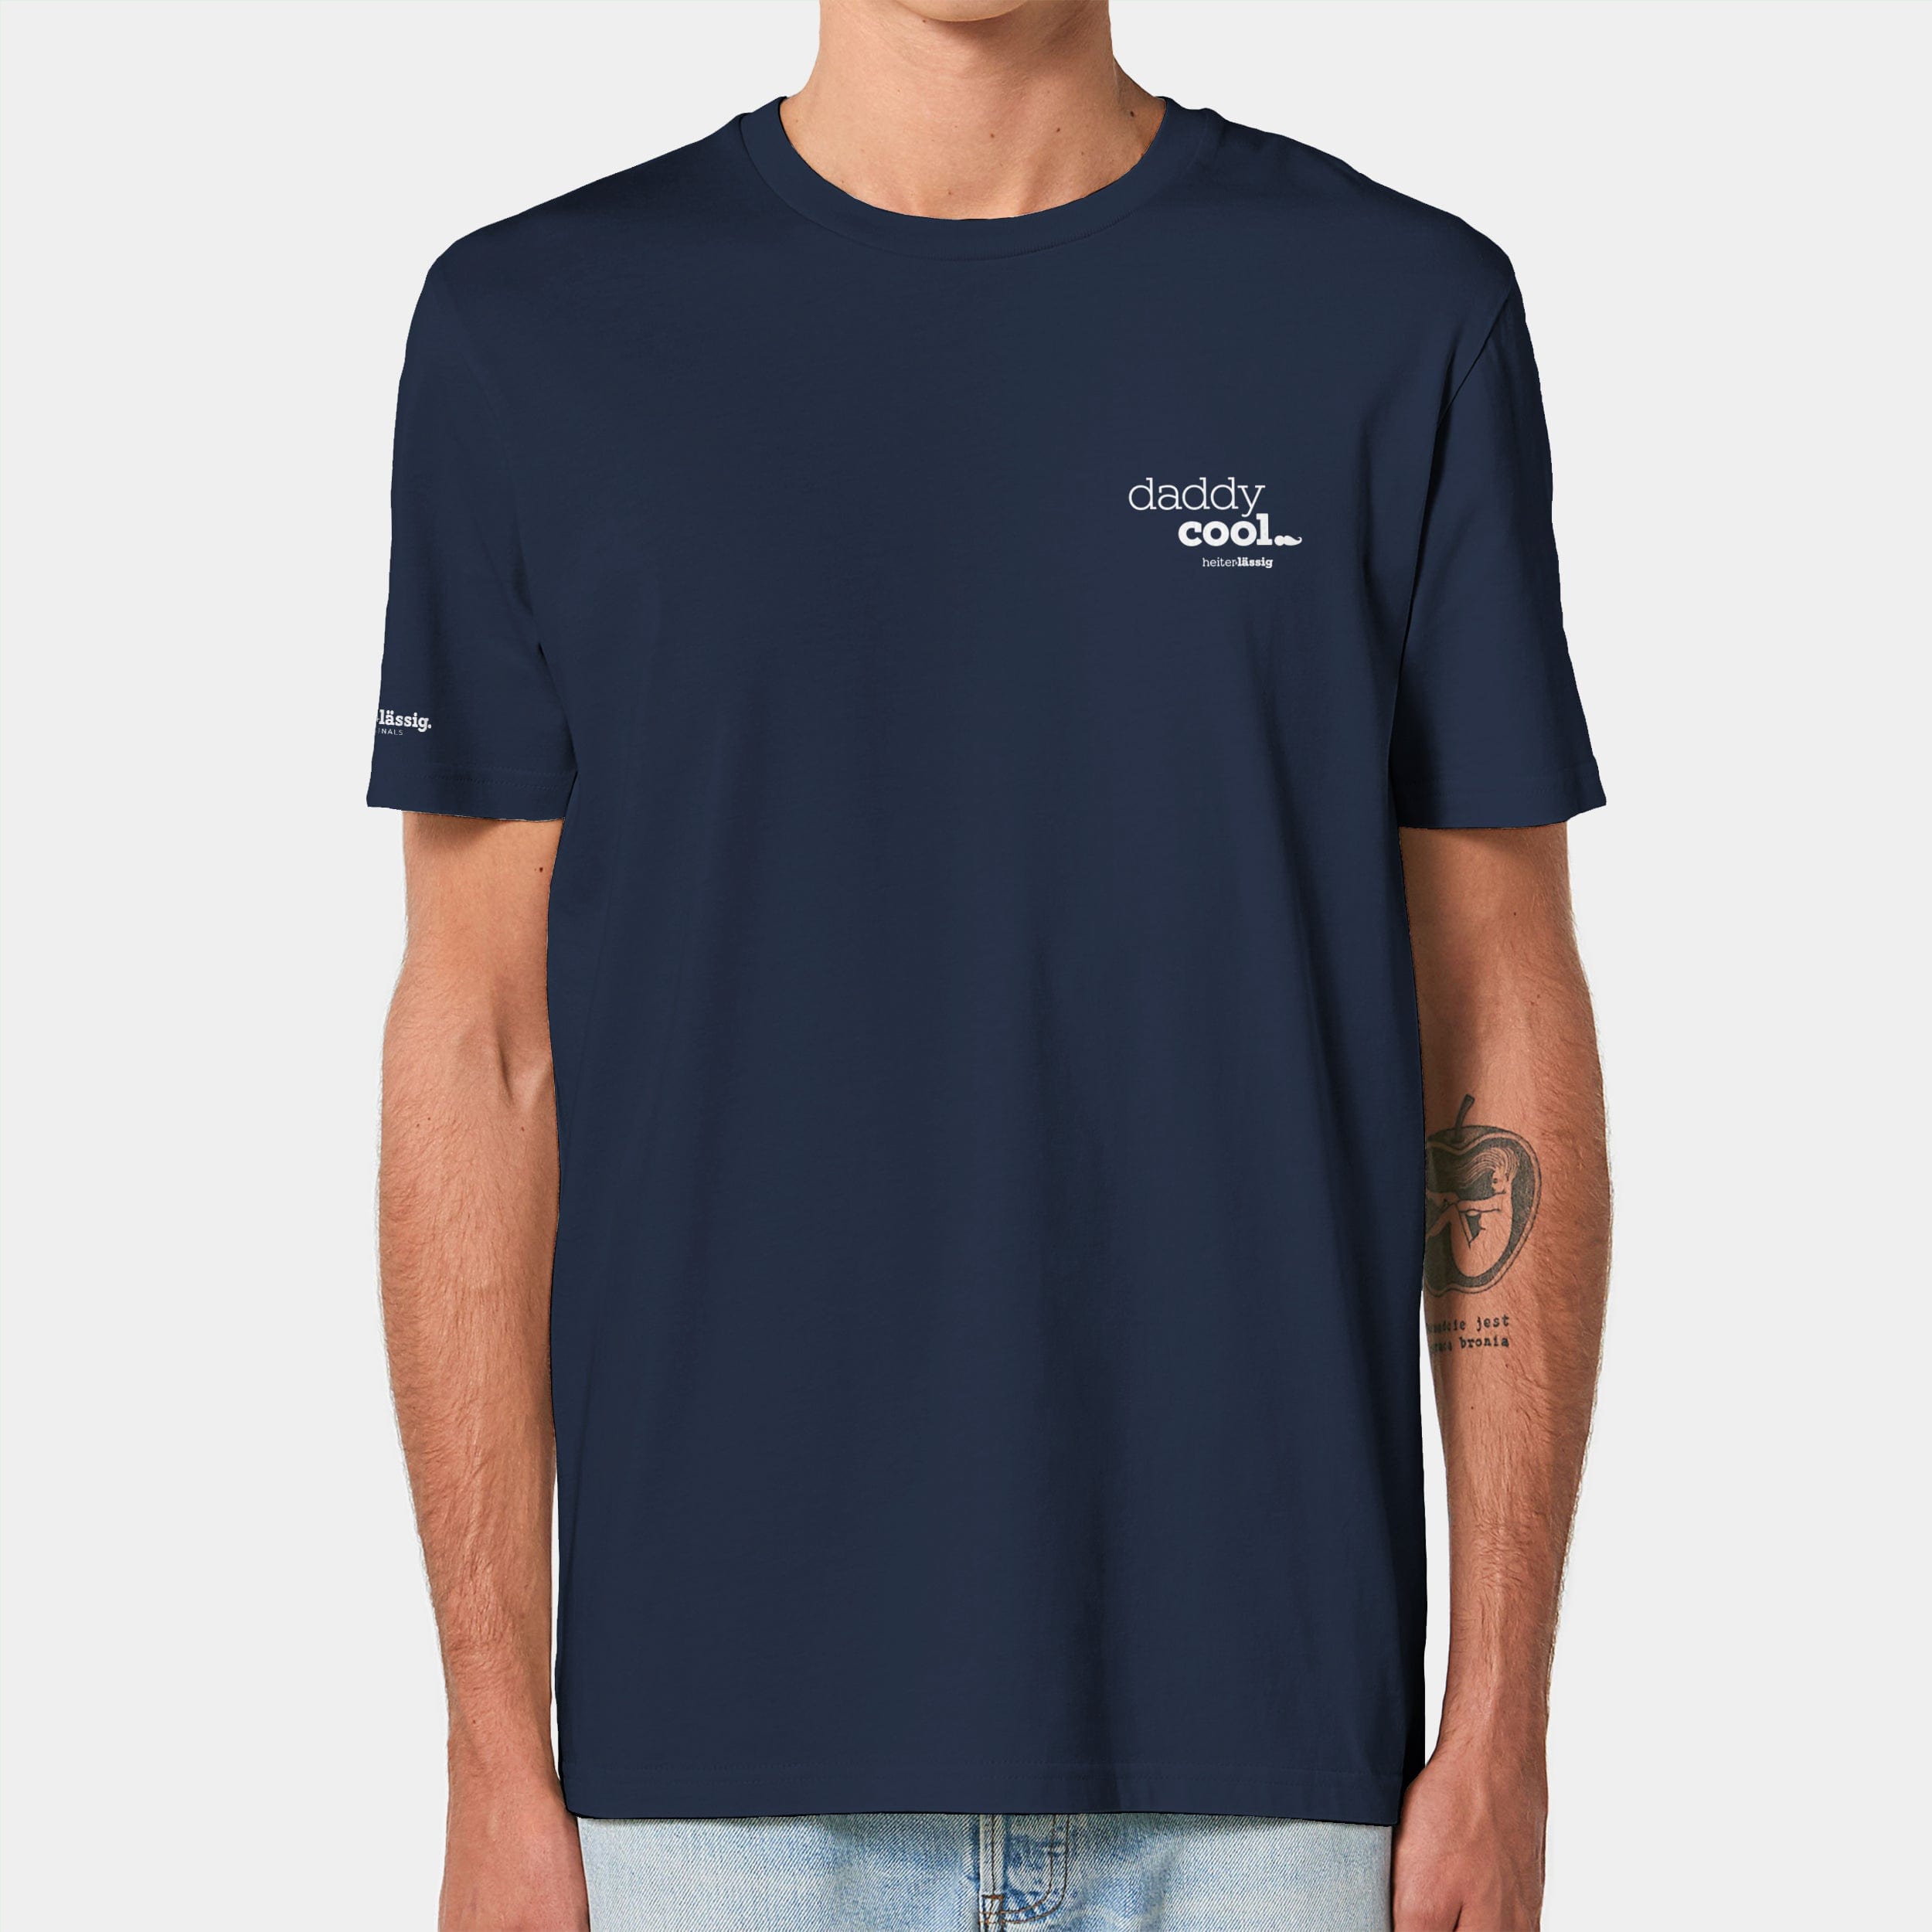 HEITER & LÄSSIG T-Shirt ORIGINAL "daddycool" XXS / french navy - aus nachhaltiger und fairer Produktion